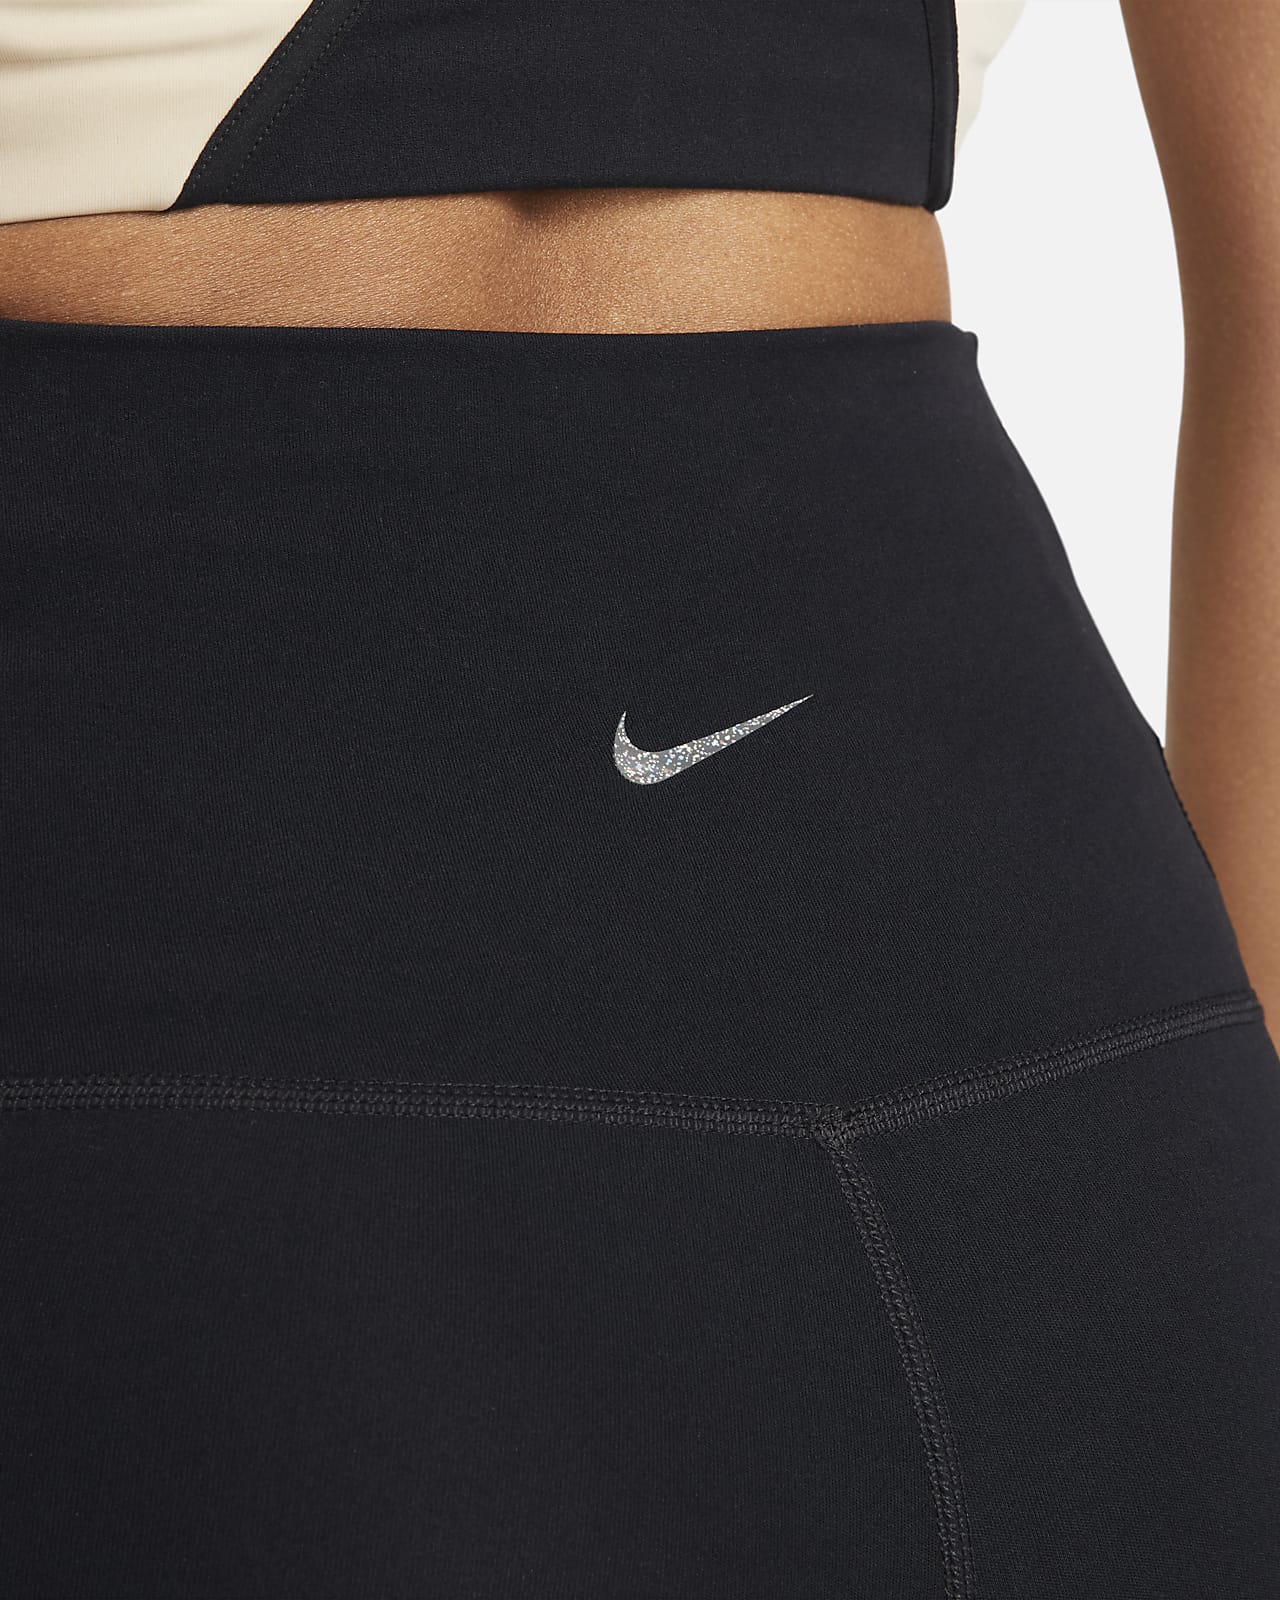 Nike Yoga Dri-FIT Luxe Women's 7/8 Color-Block Jumpsuit XL Black Gray DM6998